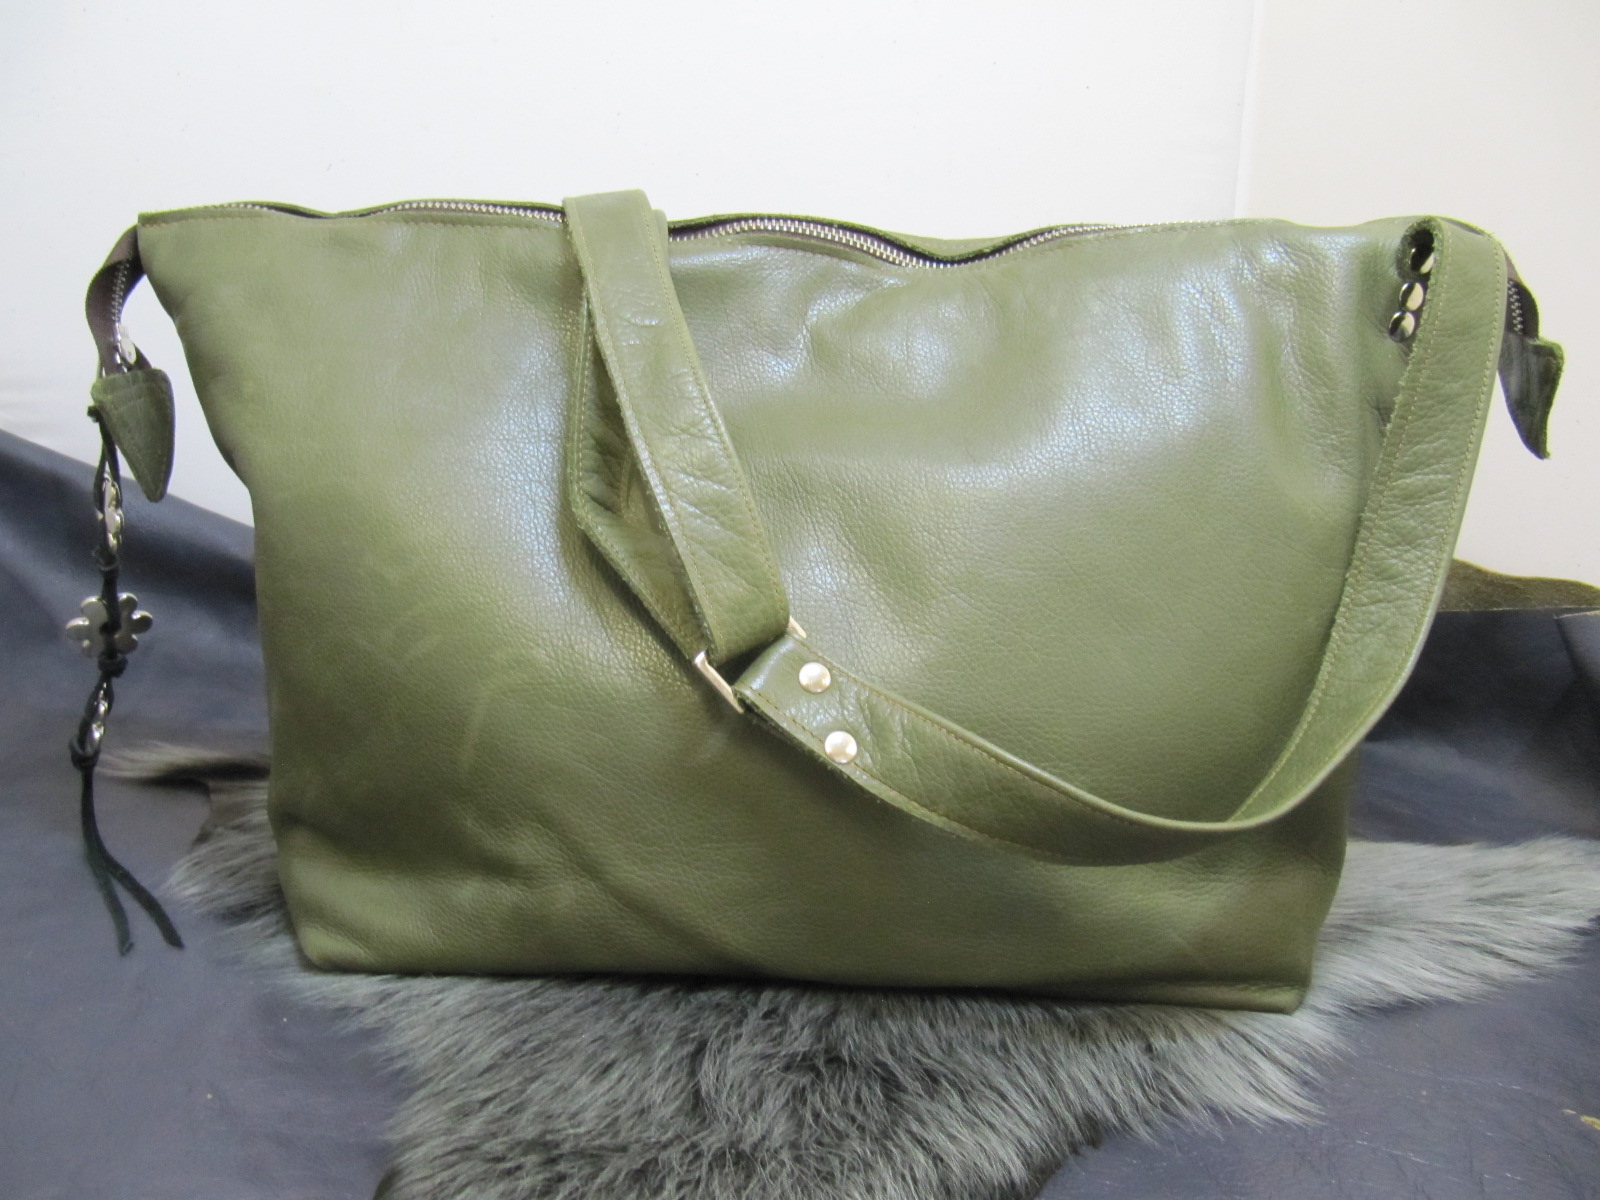 Olive Green soft leather handbag